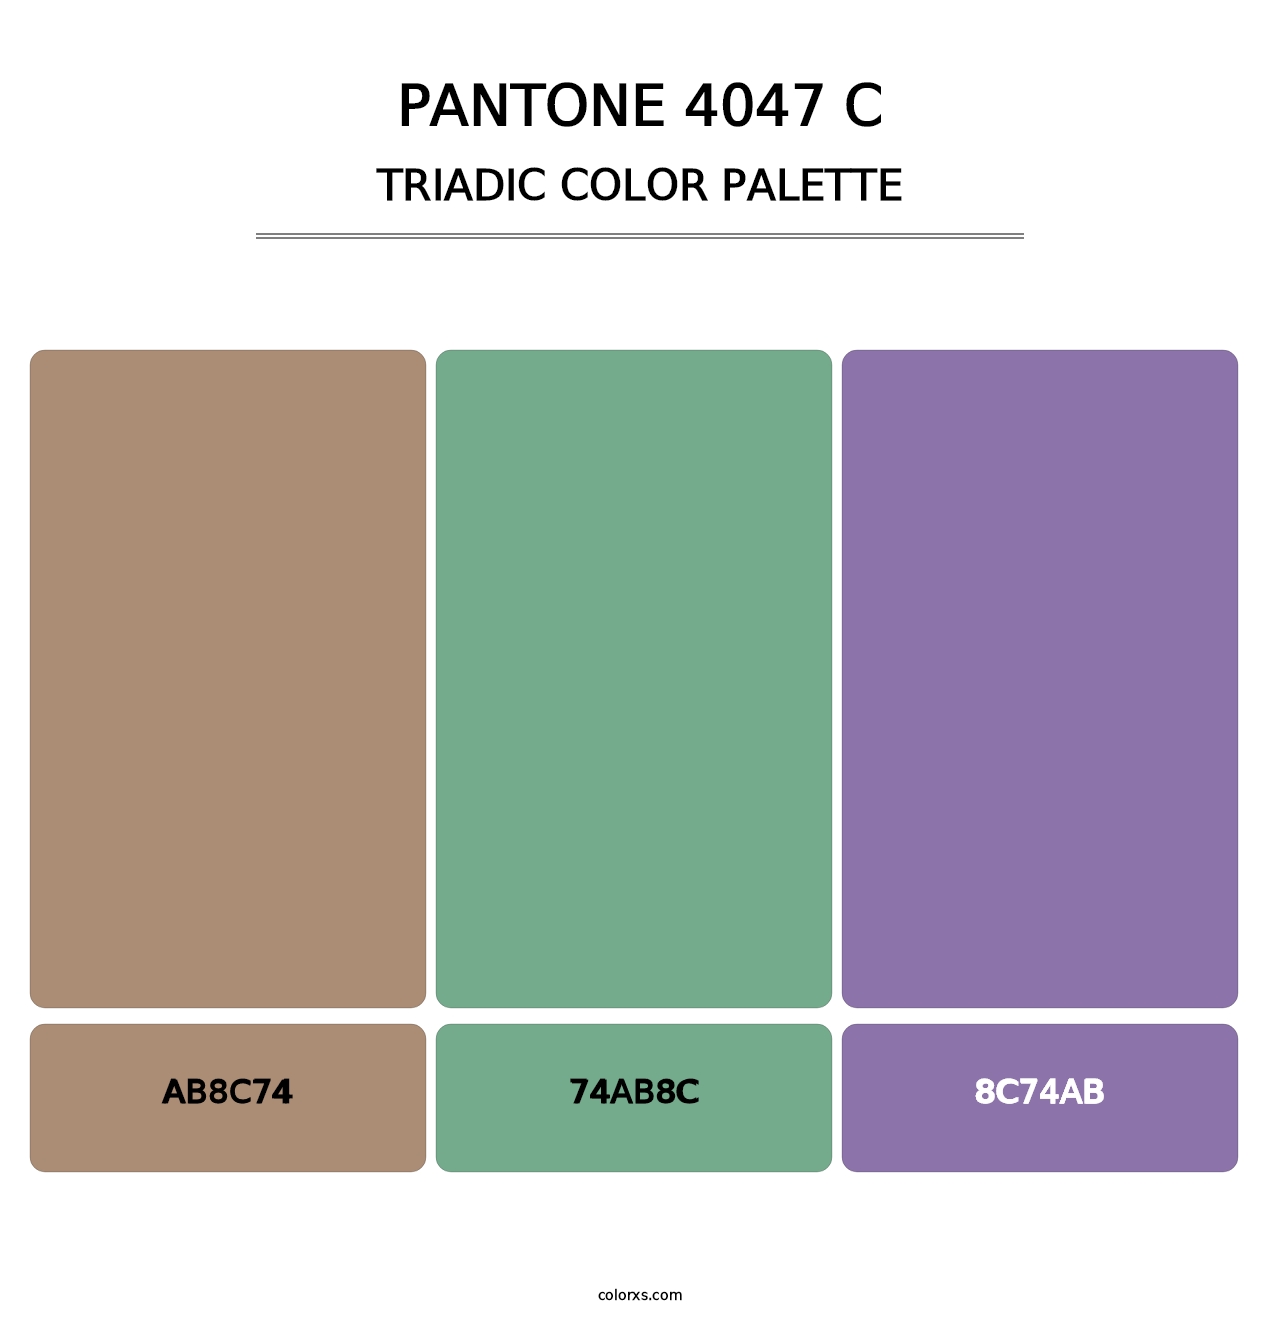 PANTONE 4047 C - Triadic Color Palette